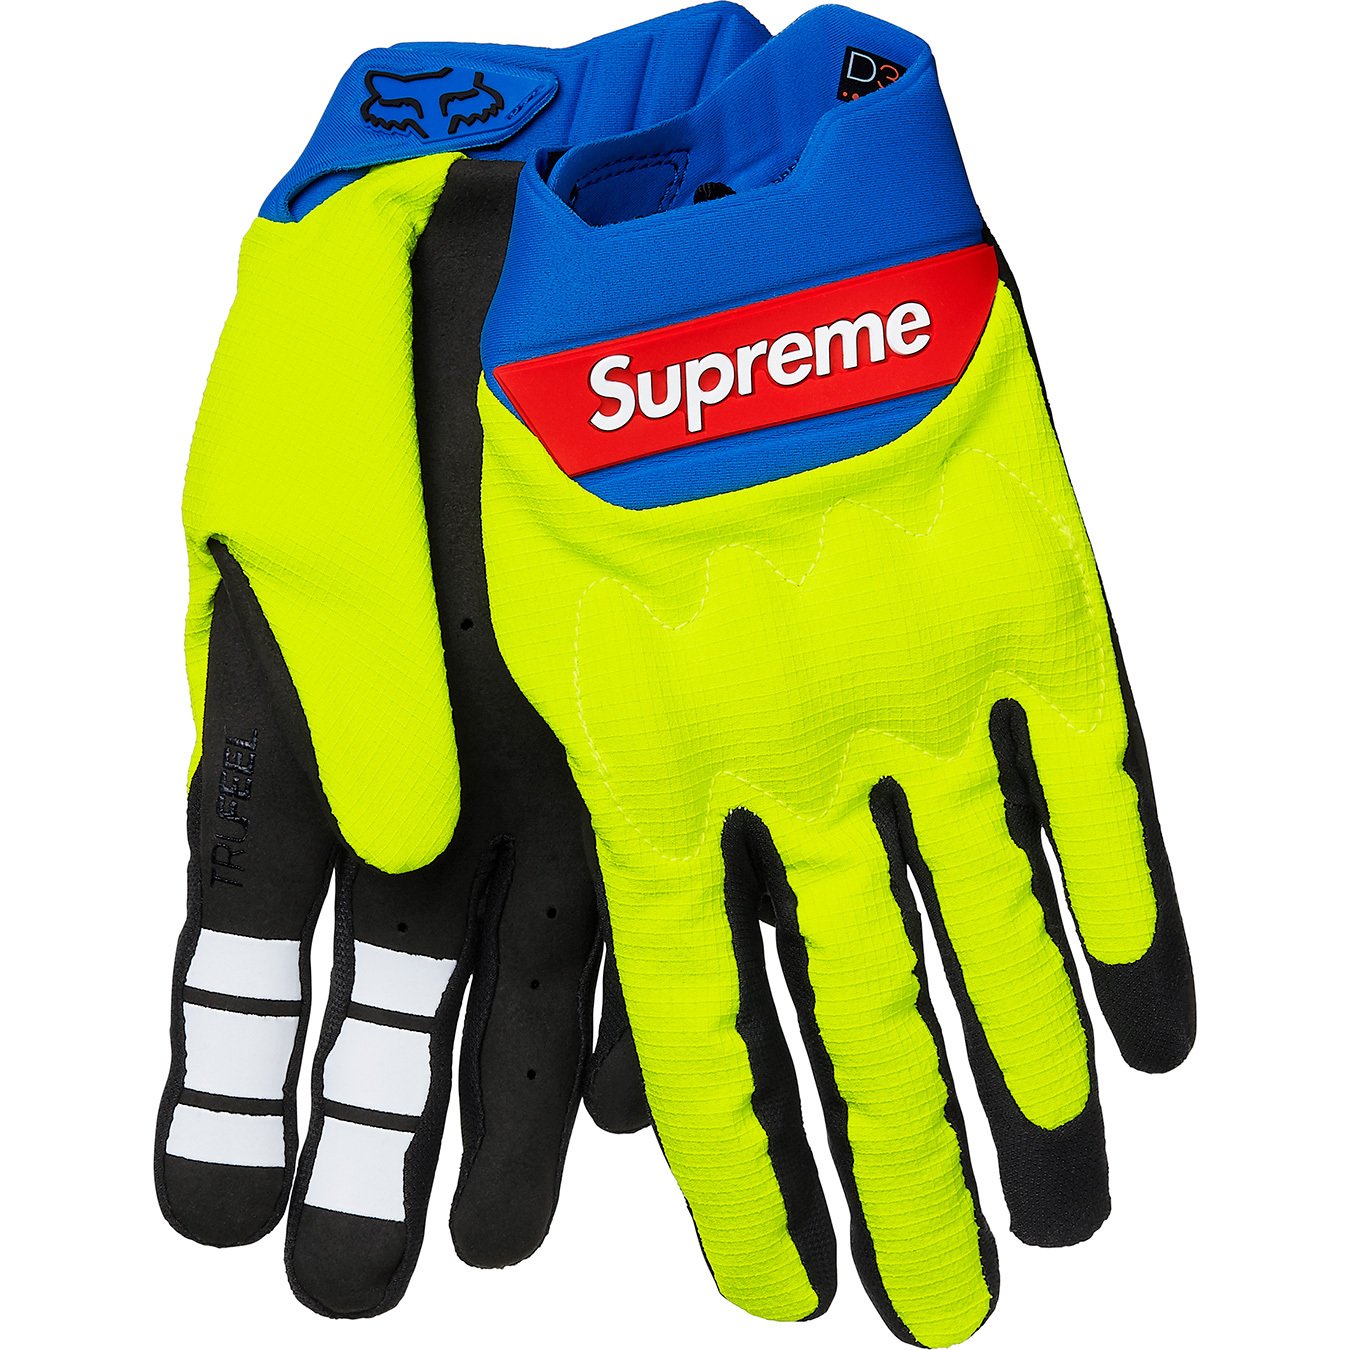 Supreme Fox Racing Bomber LT Gloves Red – BASEMENT_HK